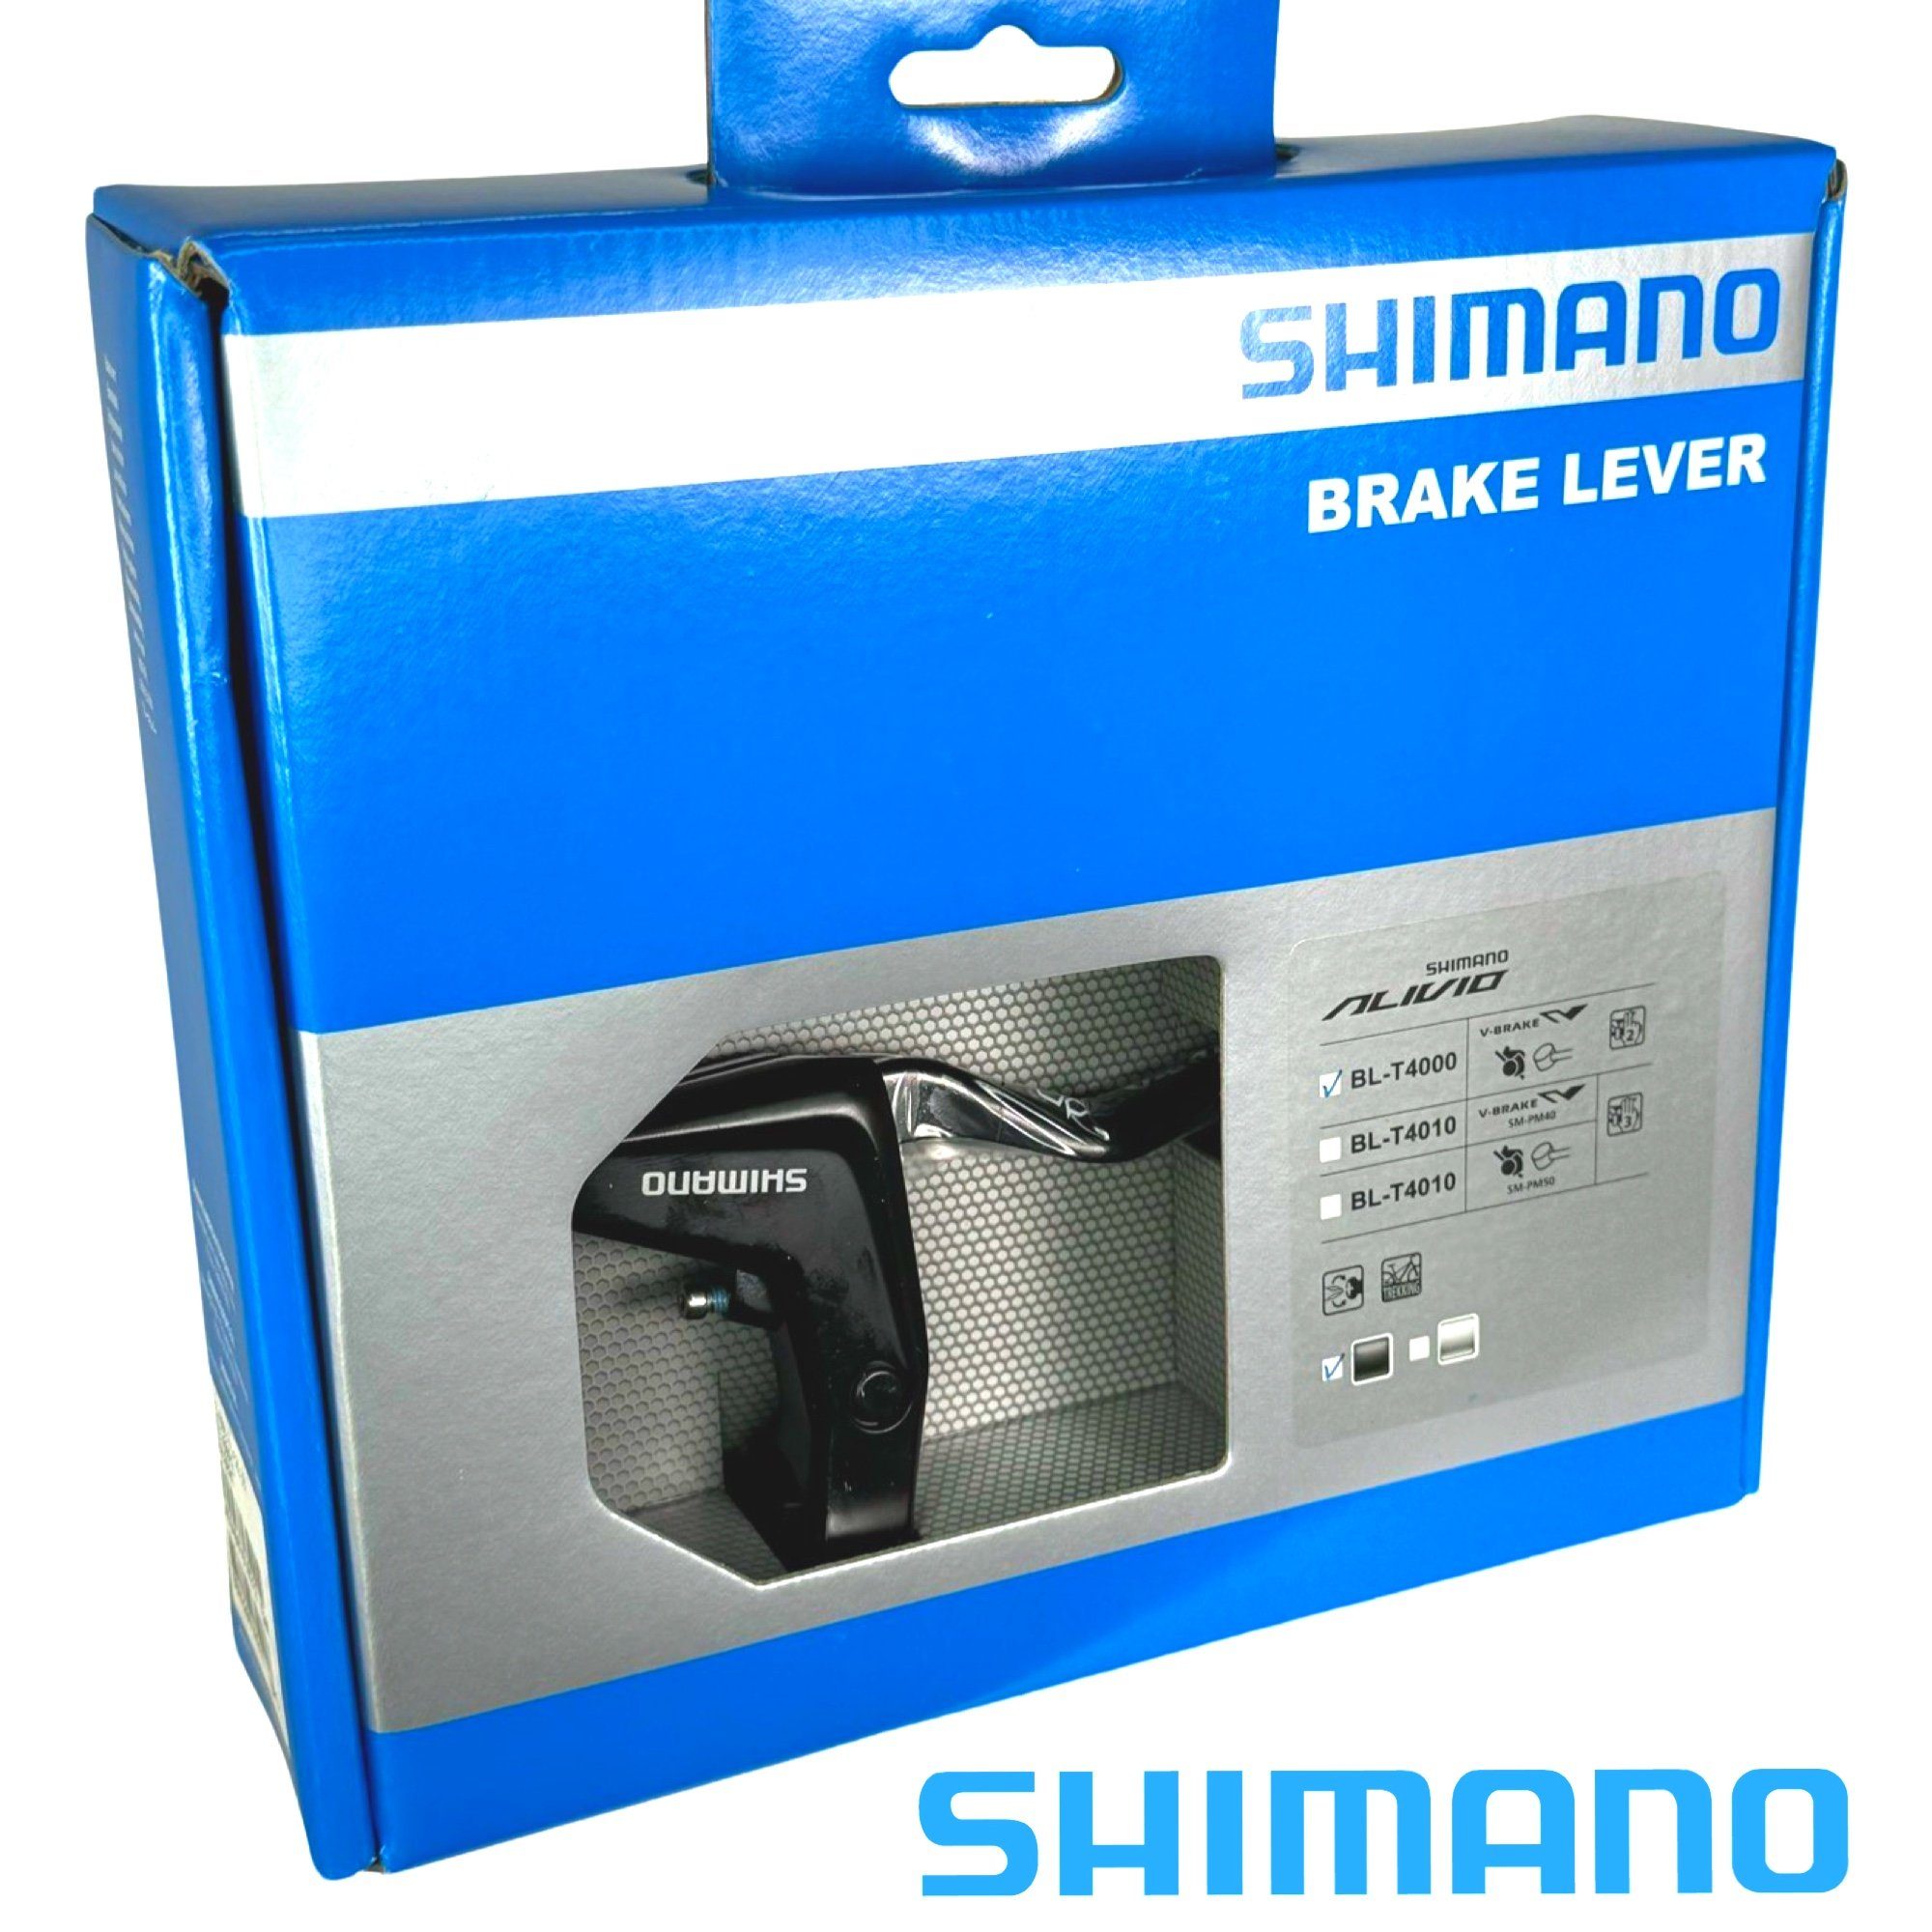 SHIMANO Shimano Bremsgriffe Fahrrad Paar L+R Felgenbremse BL-T4000 Züge 1 inklusive